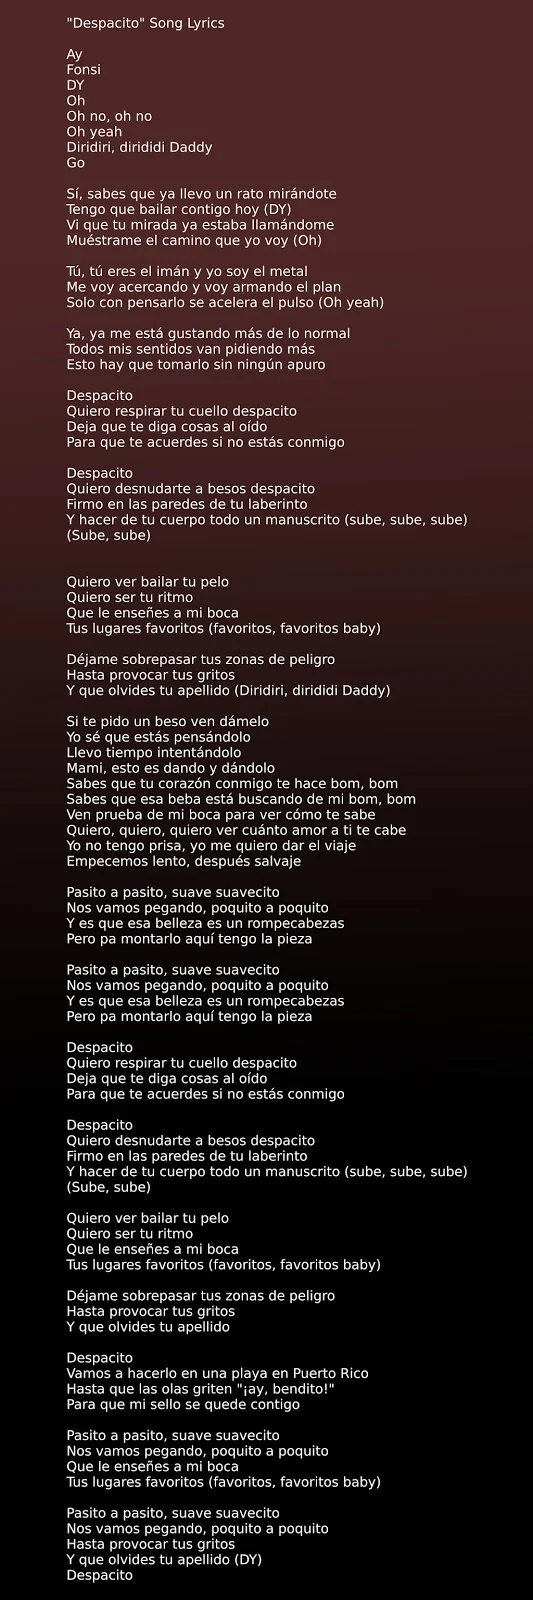 Luis Fonsi - Despacito ft. Daddy Yankee Song Lyrics in image